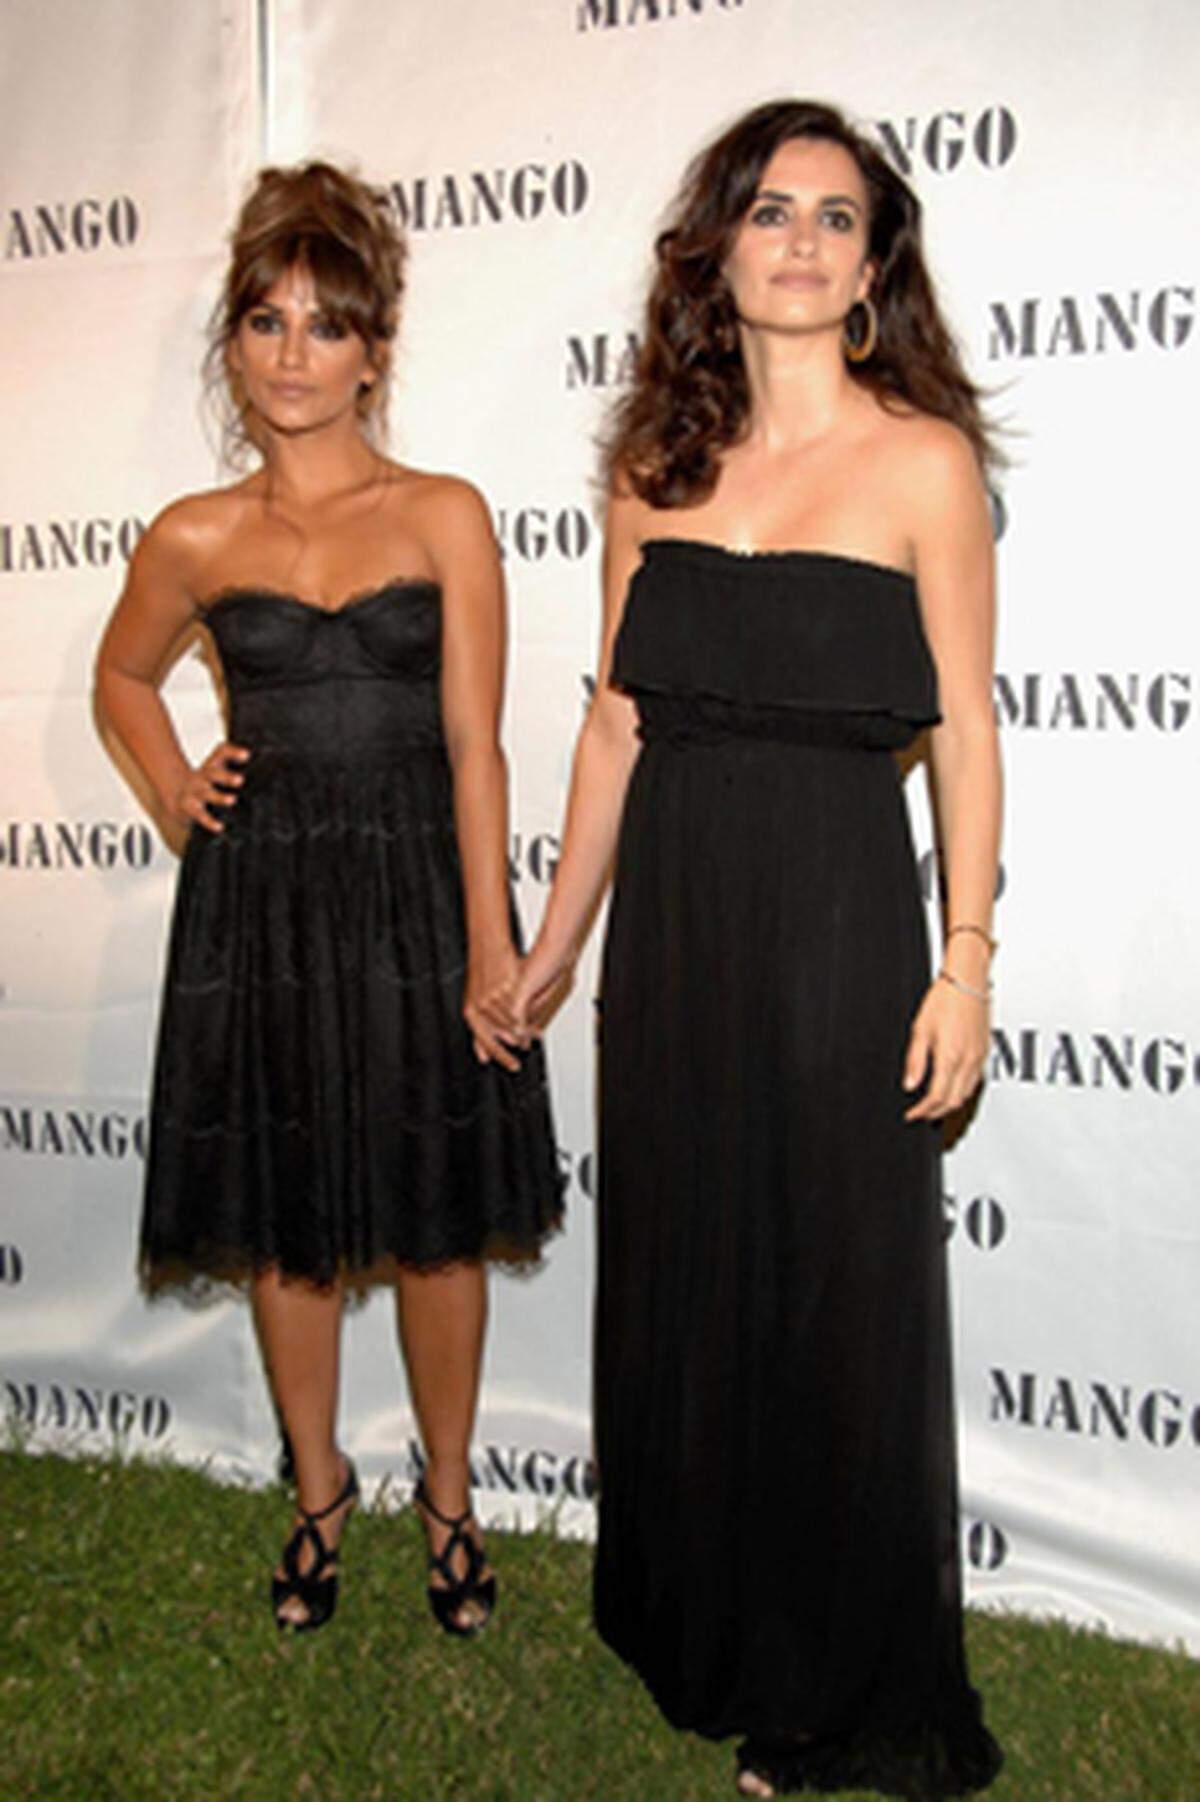 Die spanische Stilikone Penélope Cruz und ihre Schwester Monica haben für Mango eine Kollektion kreiert. Gleich ihren Vorgängerinnen Milla Jovovic, Lizzi Jagger und Claudia Schiffer werden die beiden auch für die dazugehörige Werbekampagne vor der Kamera stehen.